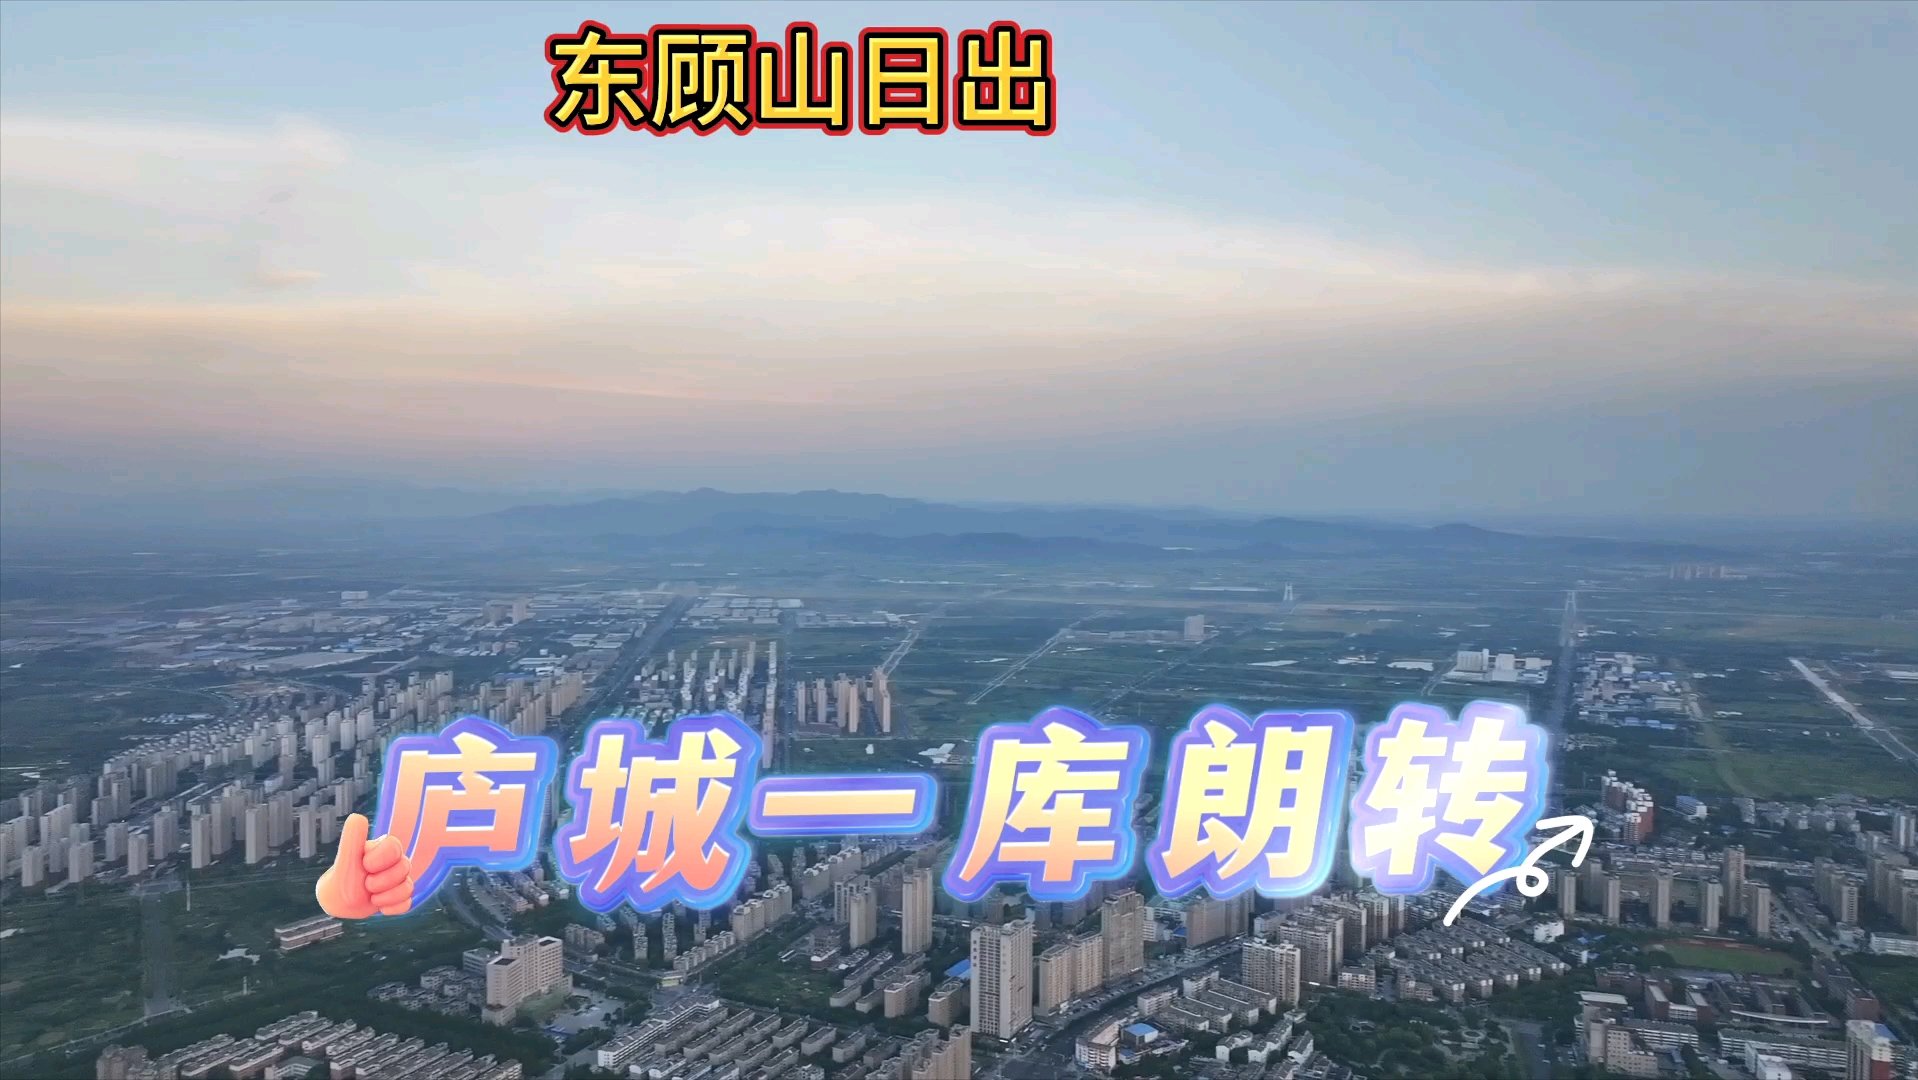 夏日清晨,东顾山日出之时,无人机镜头在500米低空拍摄庐城一周